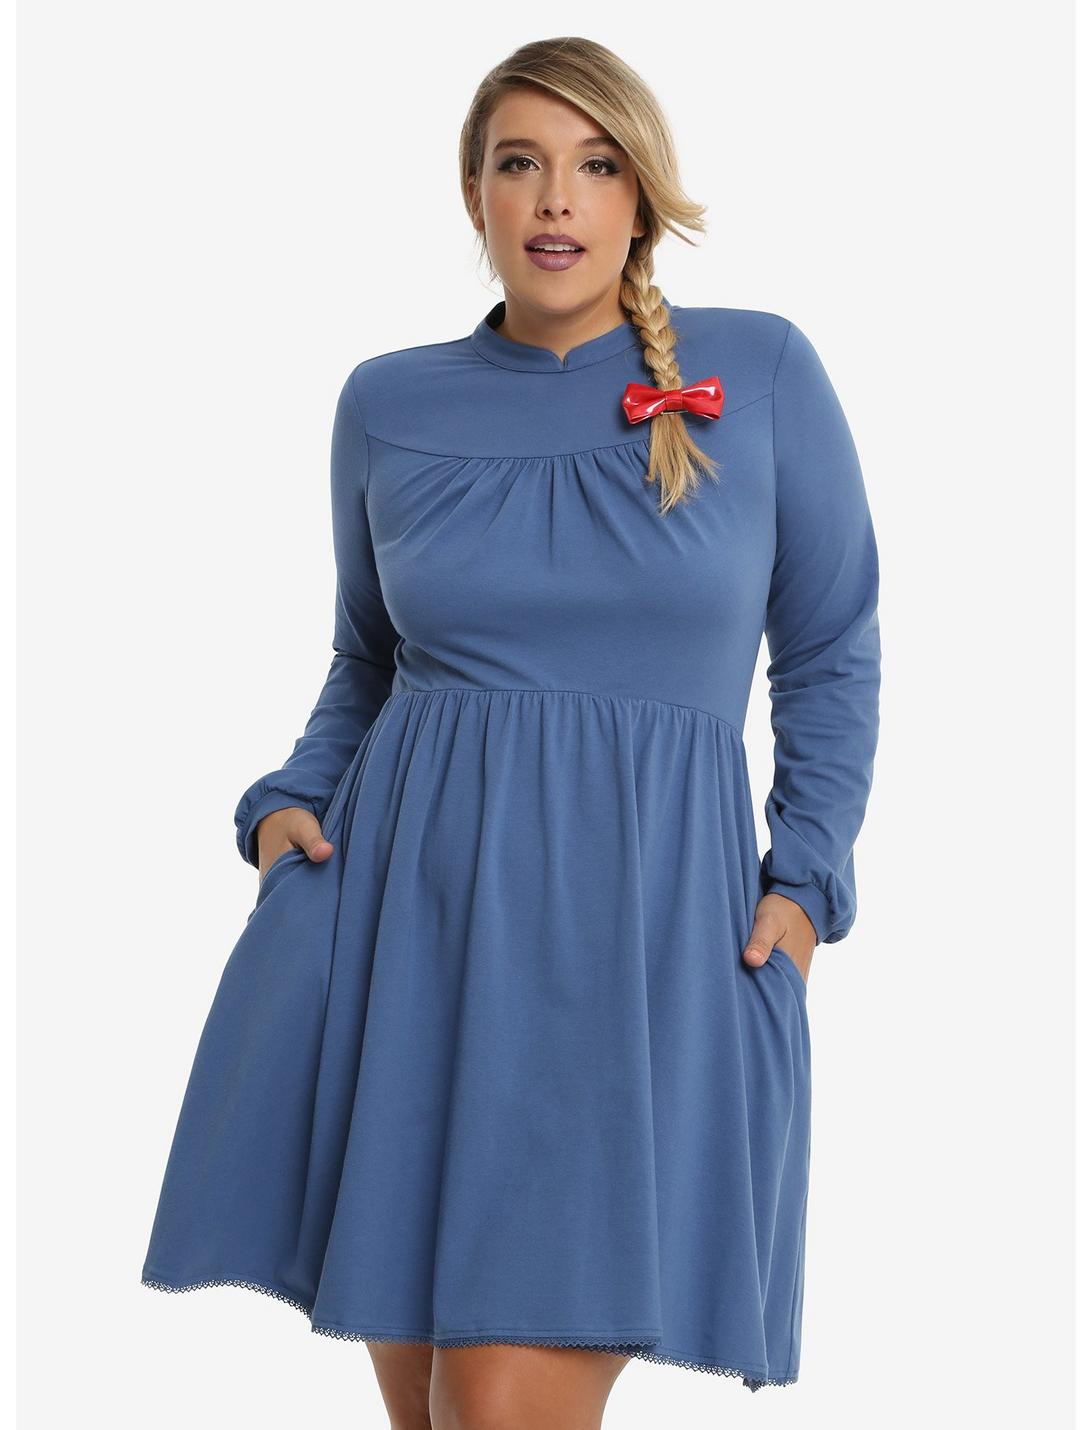 Studio Ghbili Howl's Moving Castle Sophie Dress Plus Size, BLUE, hi-res